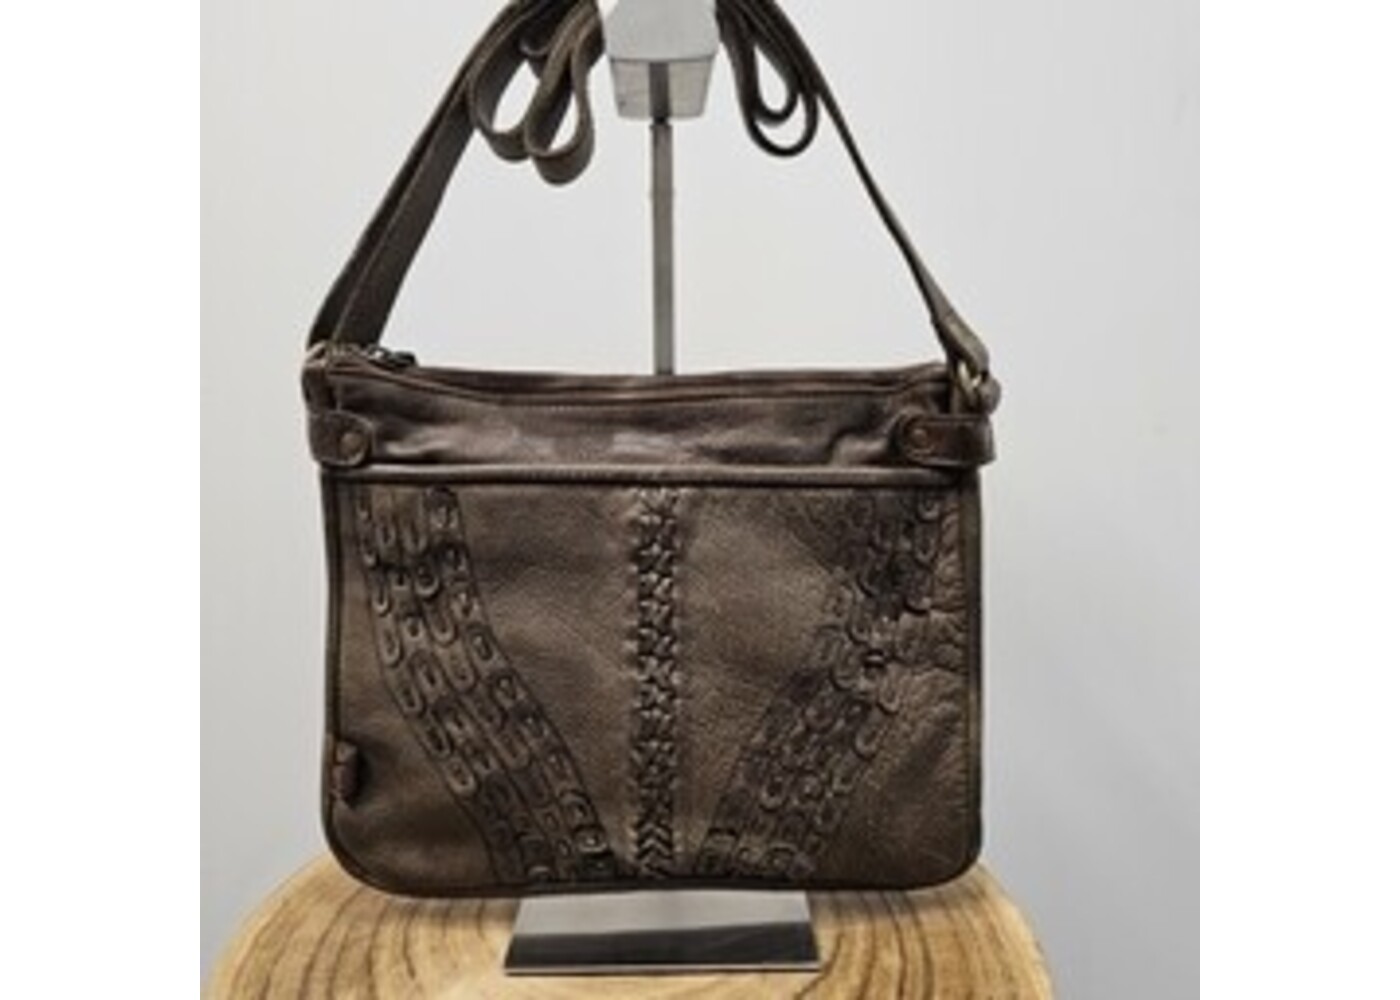 Art n Vintage Sandy zip crossbody handbag - Mud